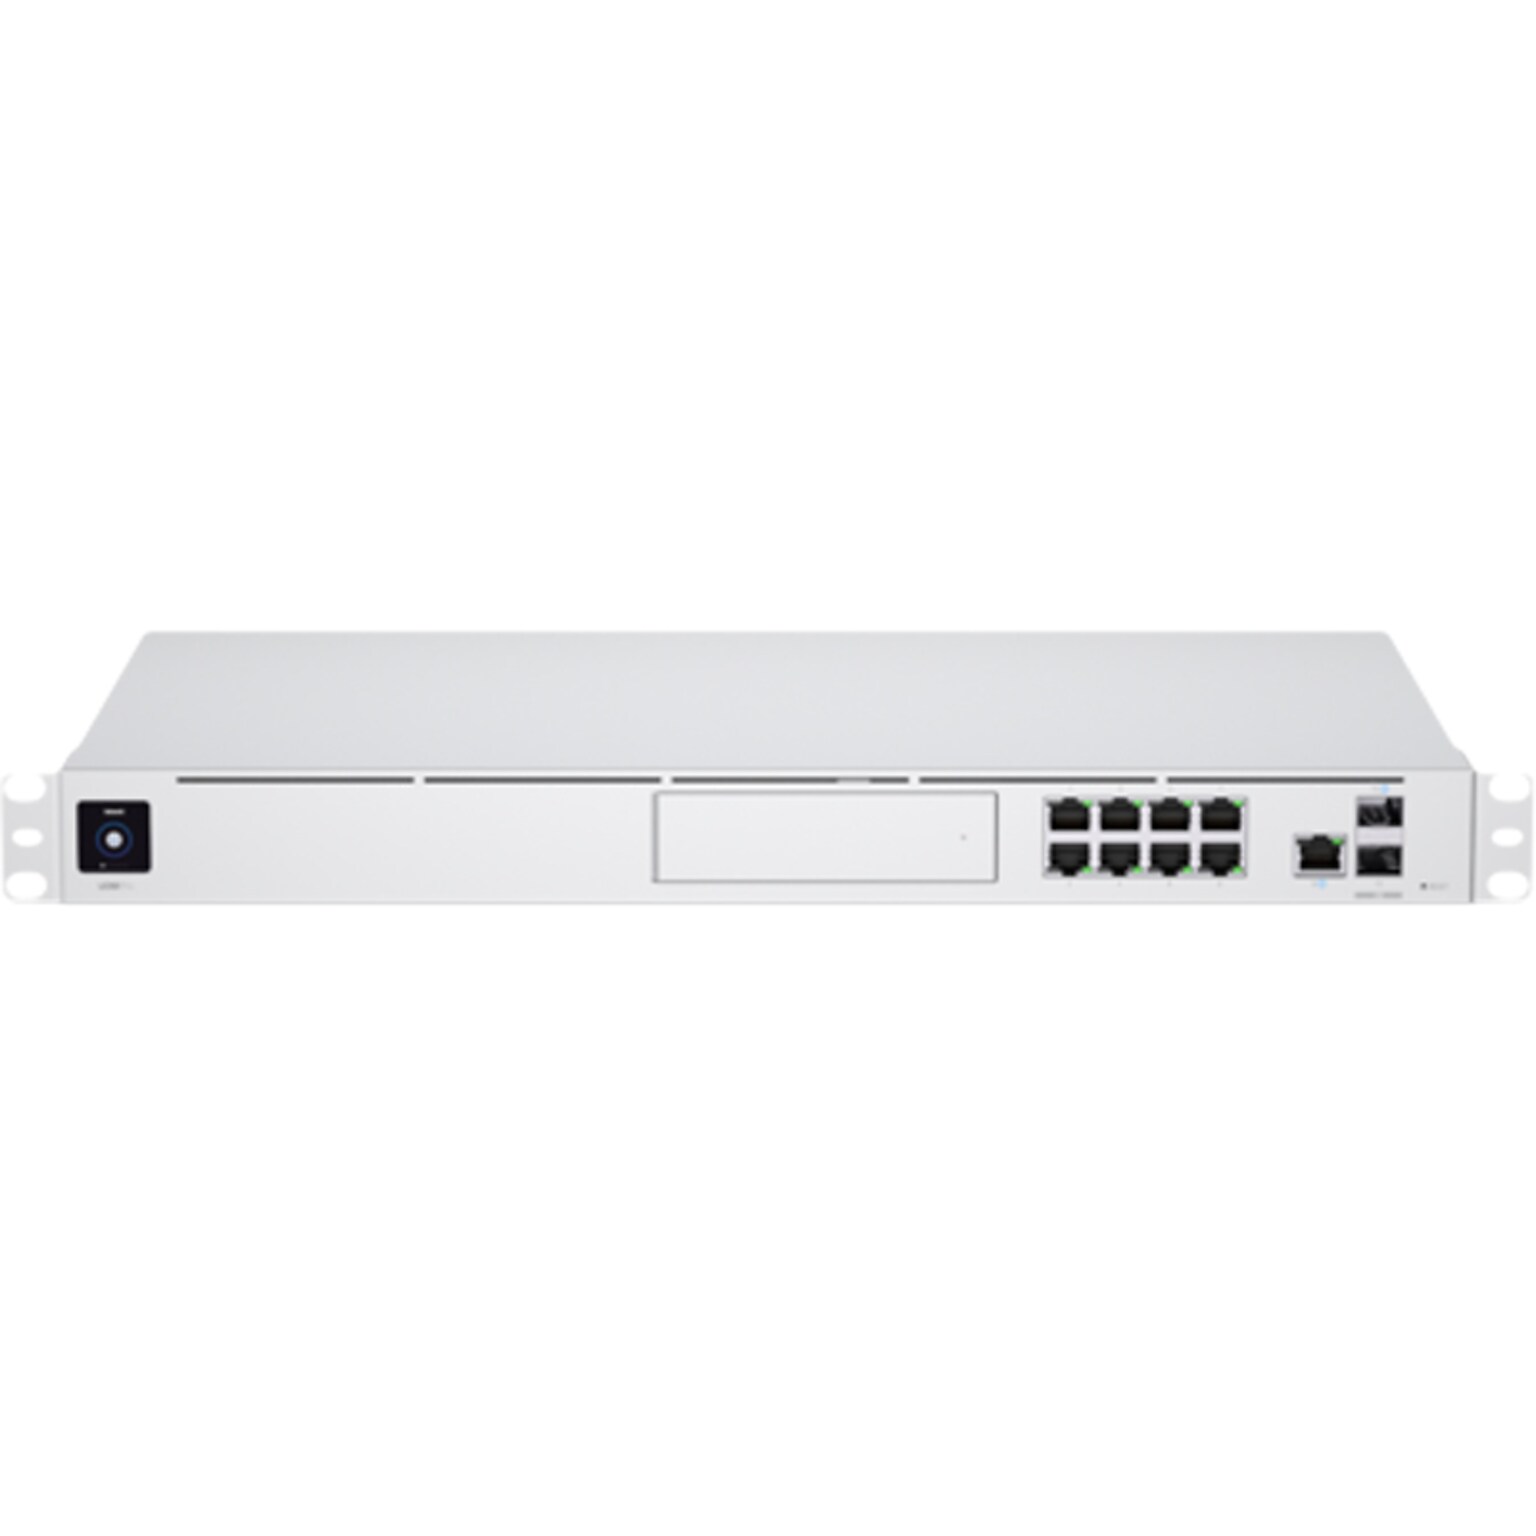 Ubiquiti UniFi Dream Machine Pro 8-Port Gigabit Ethernet Managed Switch, Silver (UDMPRO)